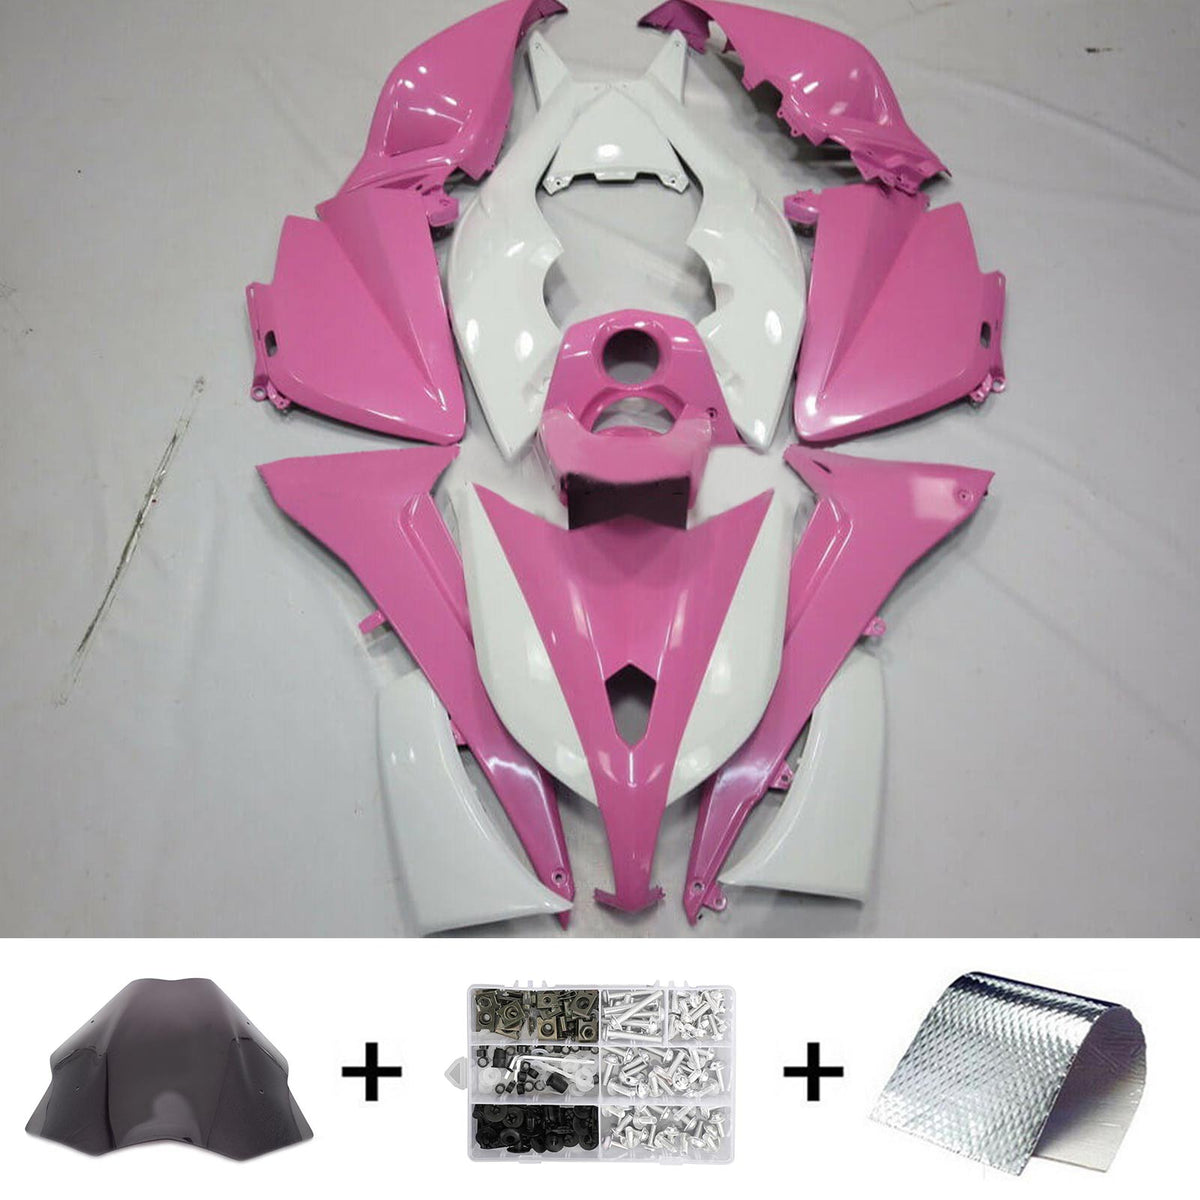 Amotopart 2012-2014 Yamaha T-Max TMAX530 Kit carena rosa e bianco